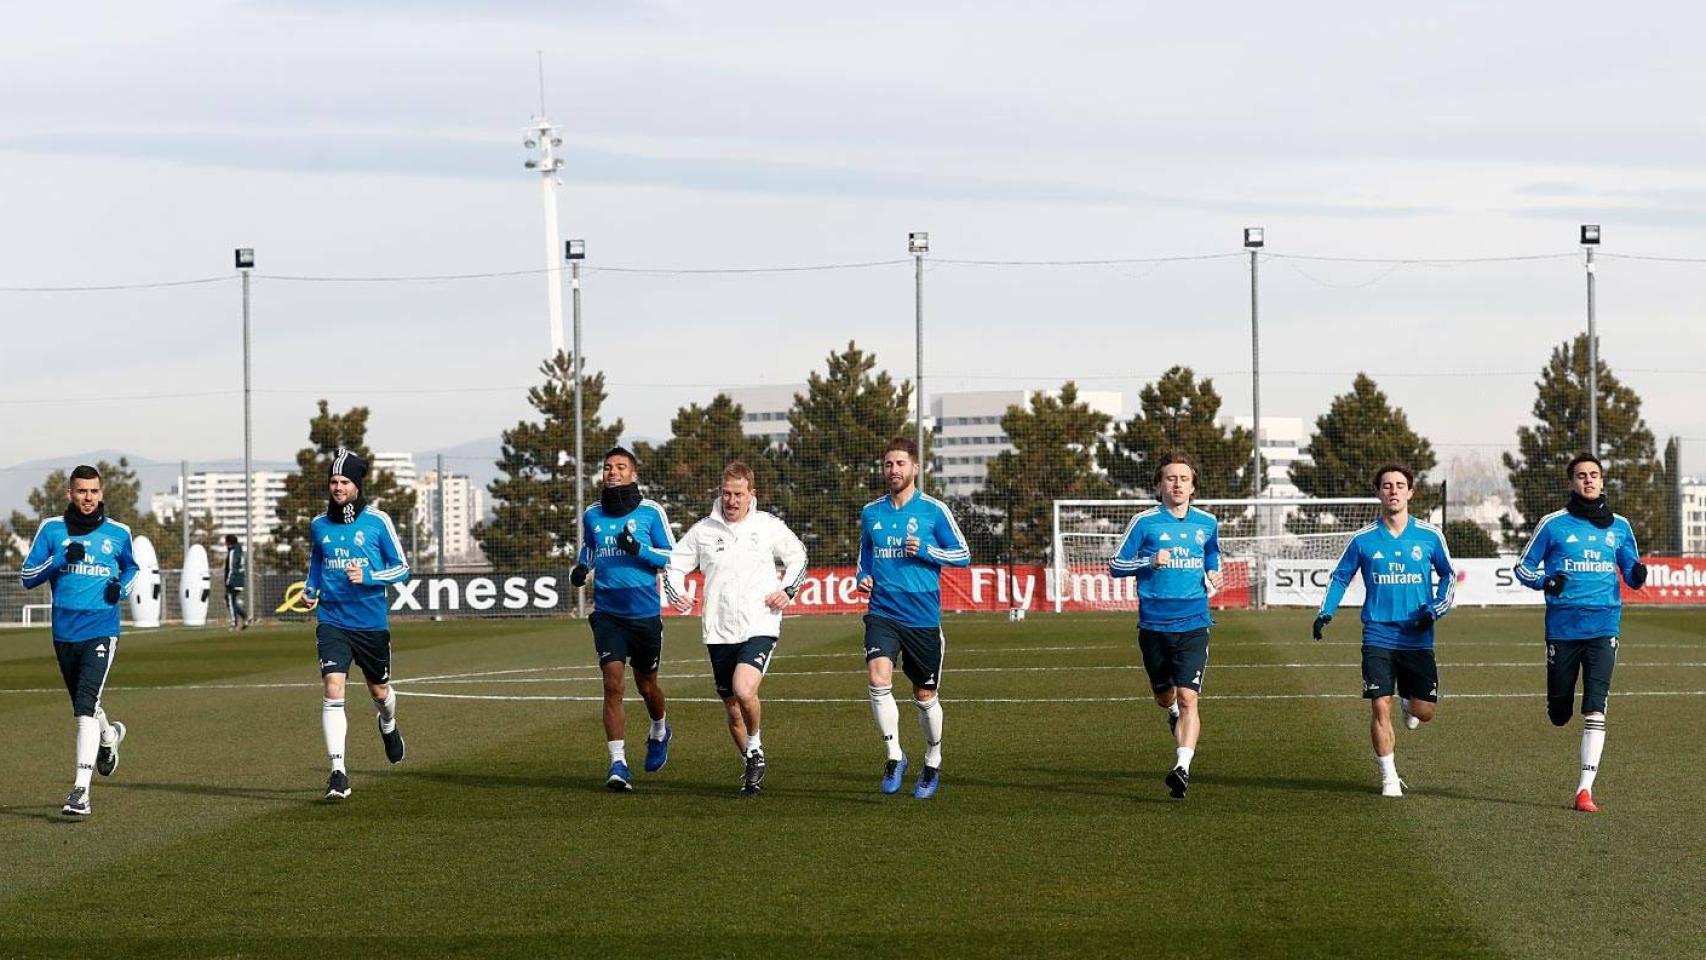 Varios jugadores del Madrid durante un entrenamiento